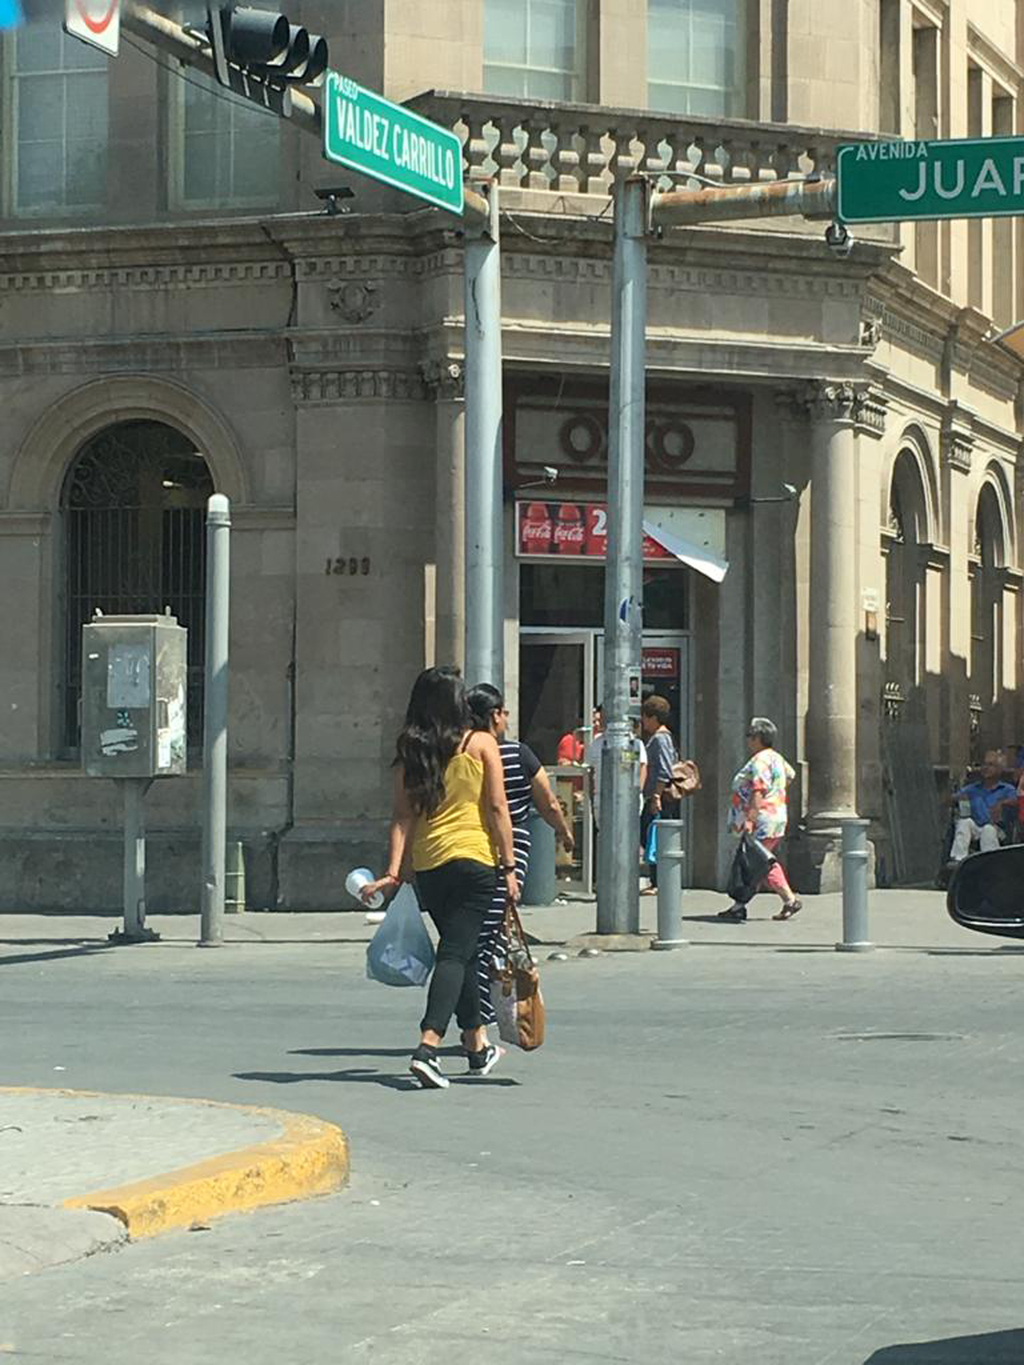 La tienda de conveniencia que fue asaltada se encuentra ubicada en el cruce de la avenida Juárez y la calle Valdez Carrillo, en la zona Centro de la ciudad de Torreón. (EL SIGLO DE TORREÓN)